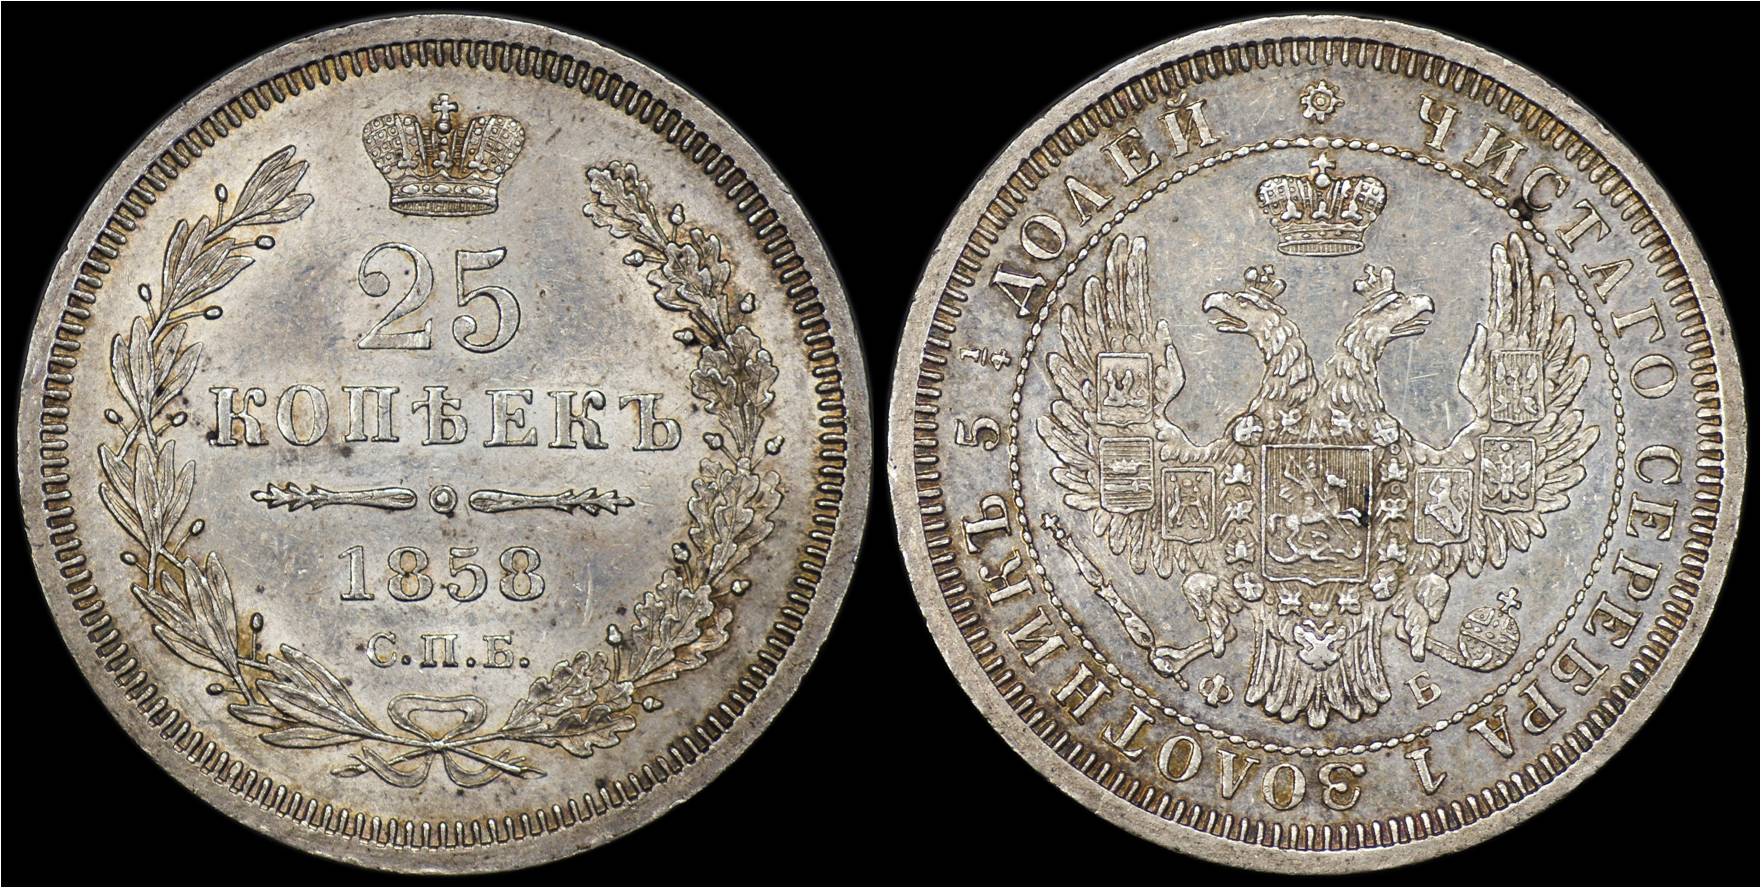 C 166.1 Russia 1858 25 Kopeks.jpg